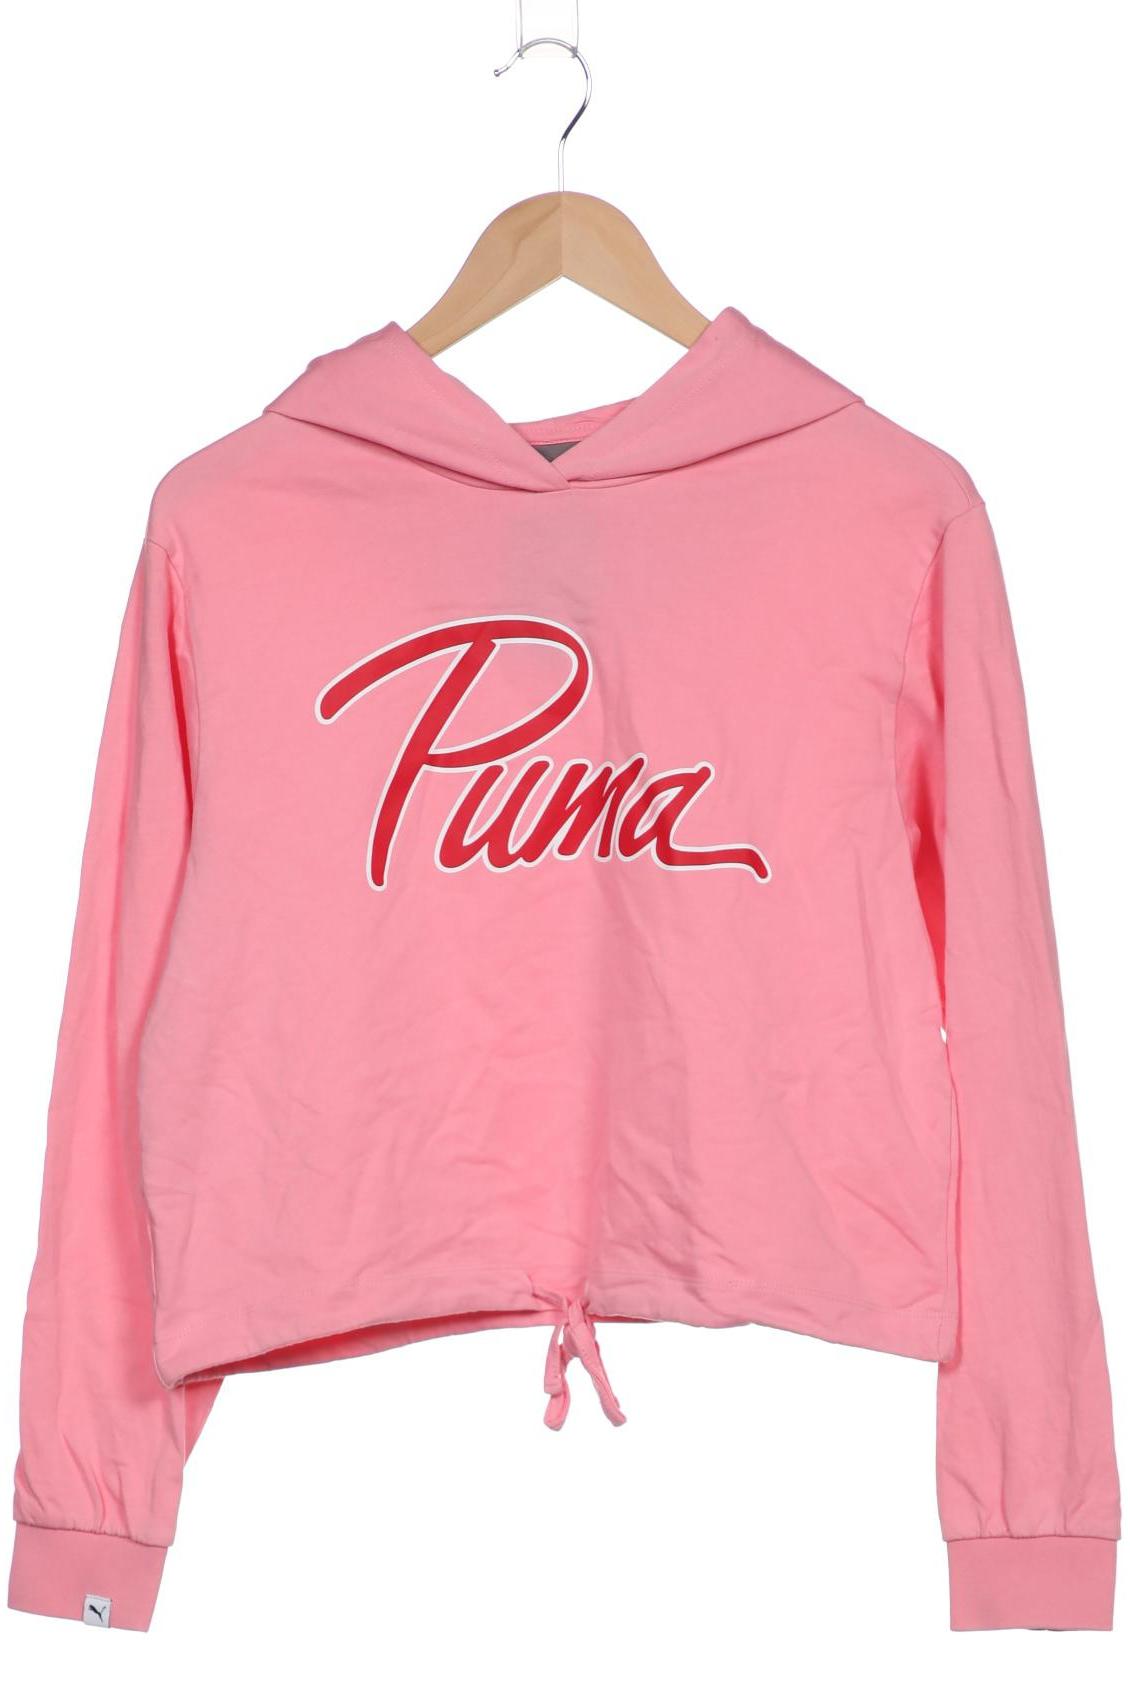 PUMA Damen Kapuzenpullover, pink von Puma